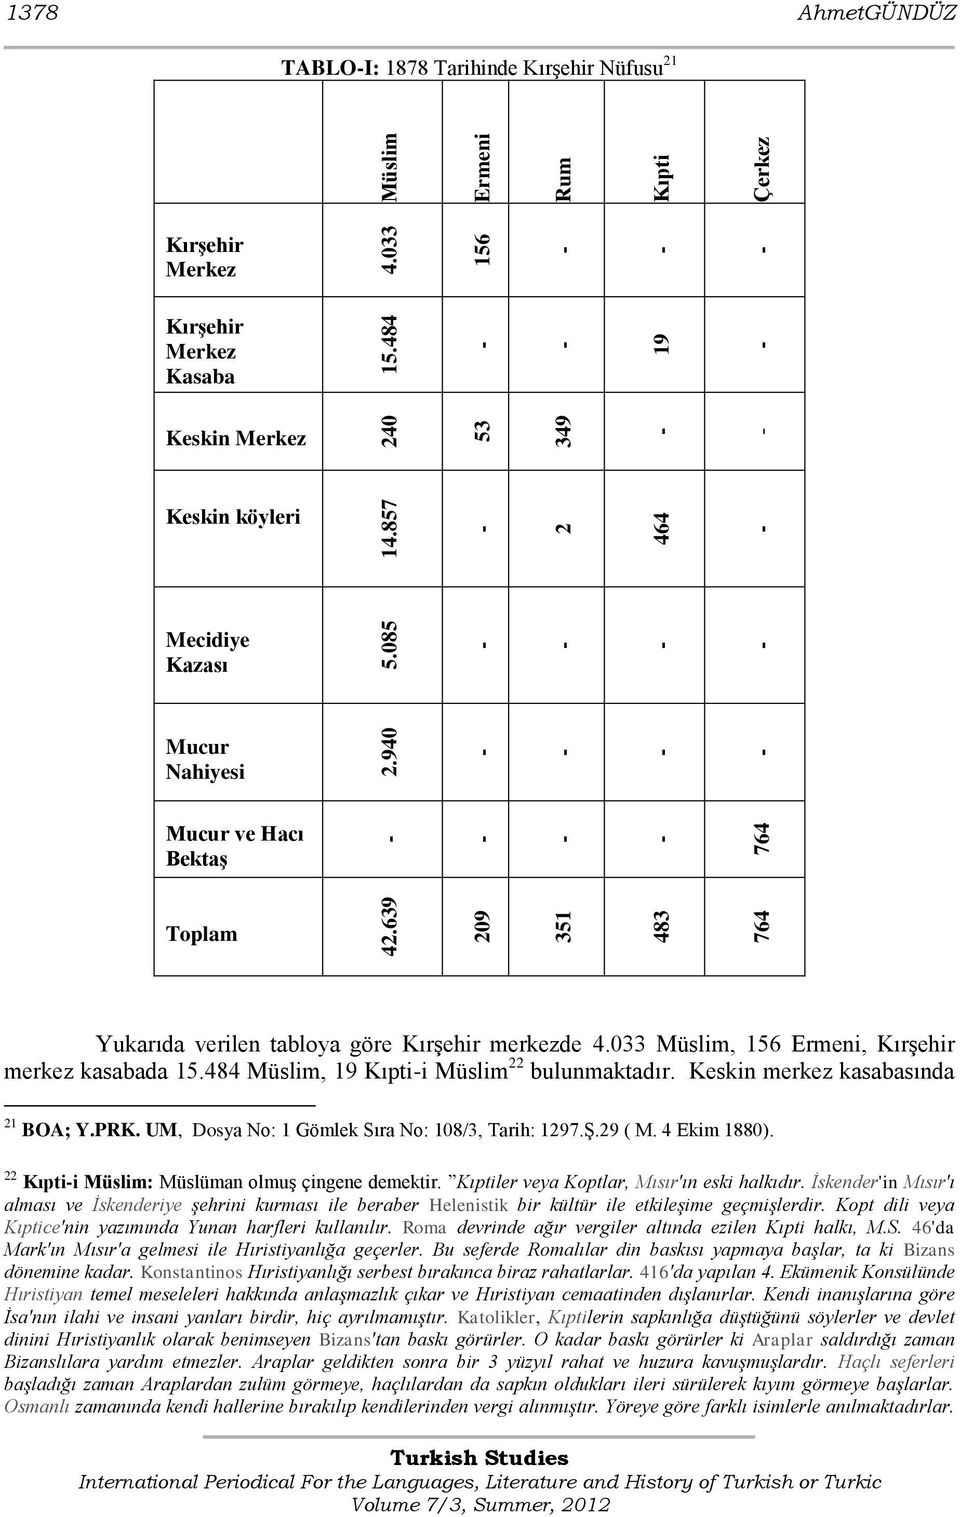 Mucur ve Hacı Bektaş Toplam Yukarıda verilen tabloya göre KırĢehir merkezde 4.033 Müslim, 156 Ermeni, KırĢehir merkez kasabada 15.484 Müslim, 19 Kıptii Müslim 22 bulunmaktadır.